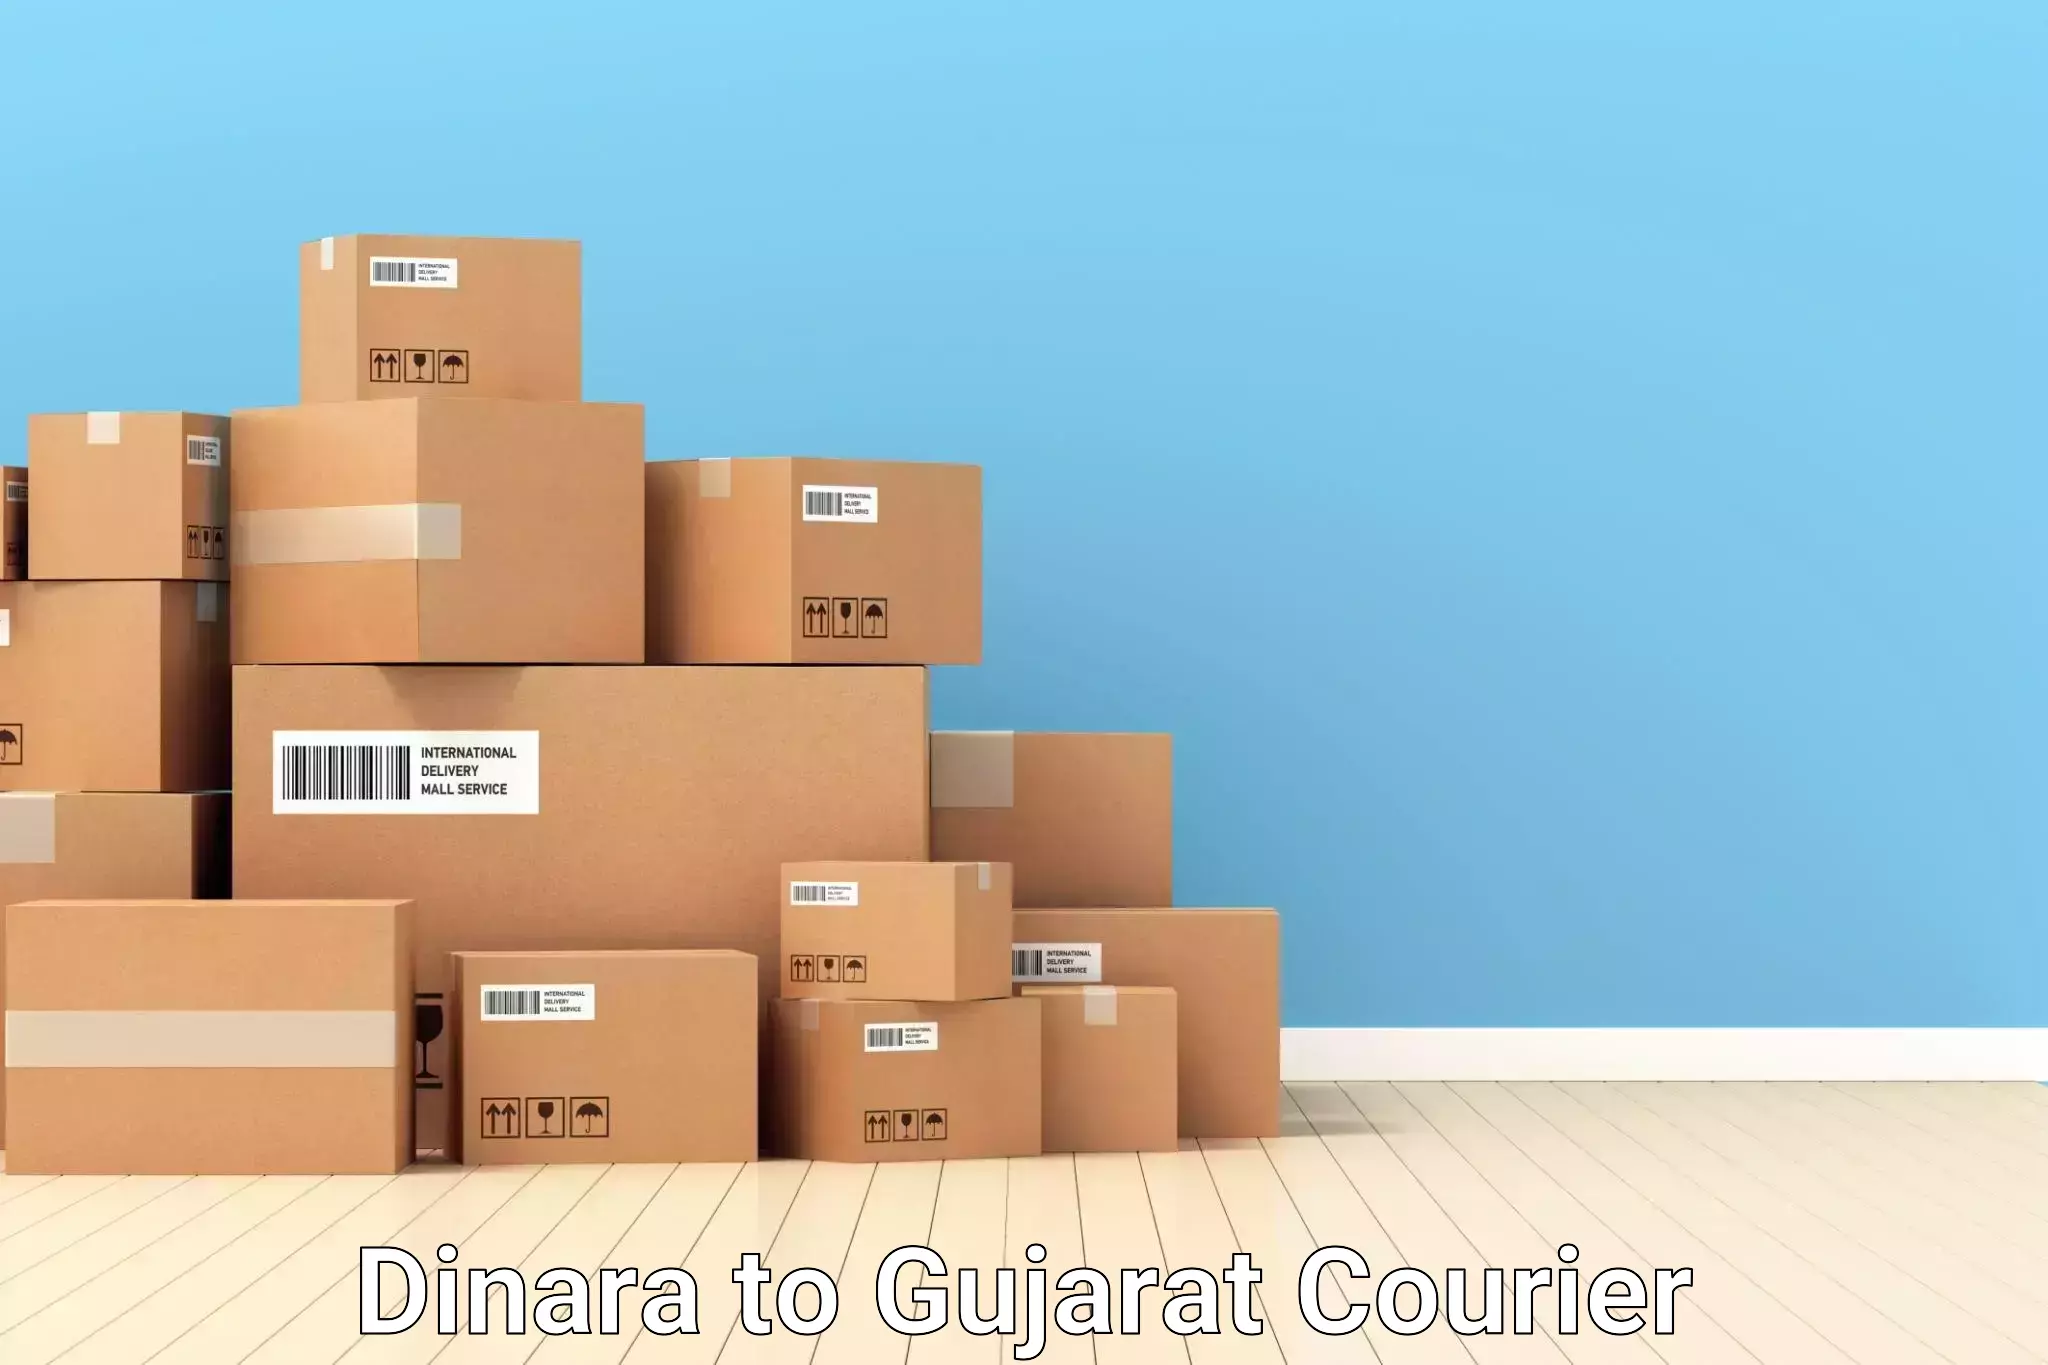 Luggage delivery app Dinara to Gujarat